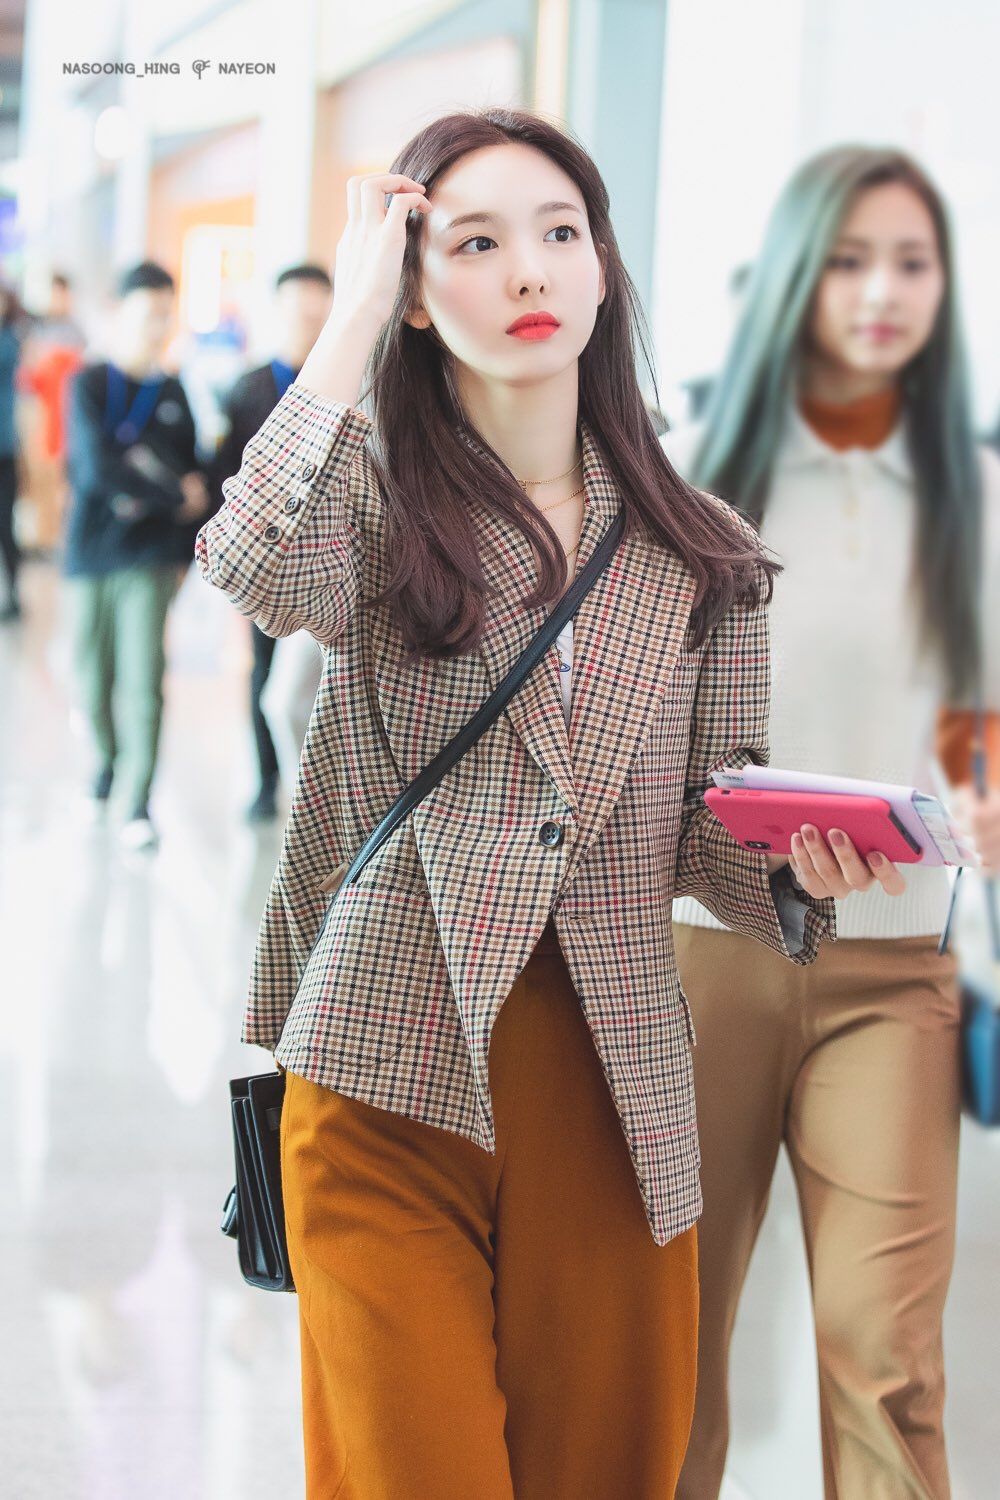 Nayeon lựa chọn cách phối màu lạ mắt hơn với áo phông trắng cùng quần màu cam sáng. Để cân bằng màu sắc, nữ idol chọn đeo một chiếc túi màu đen đơn giản.